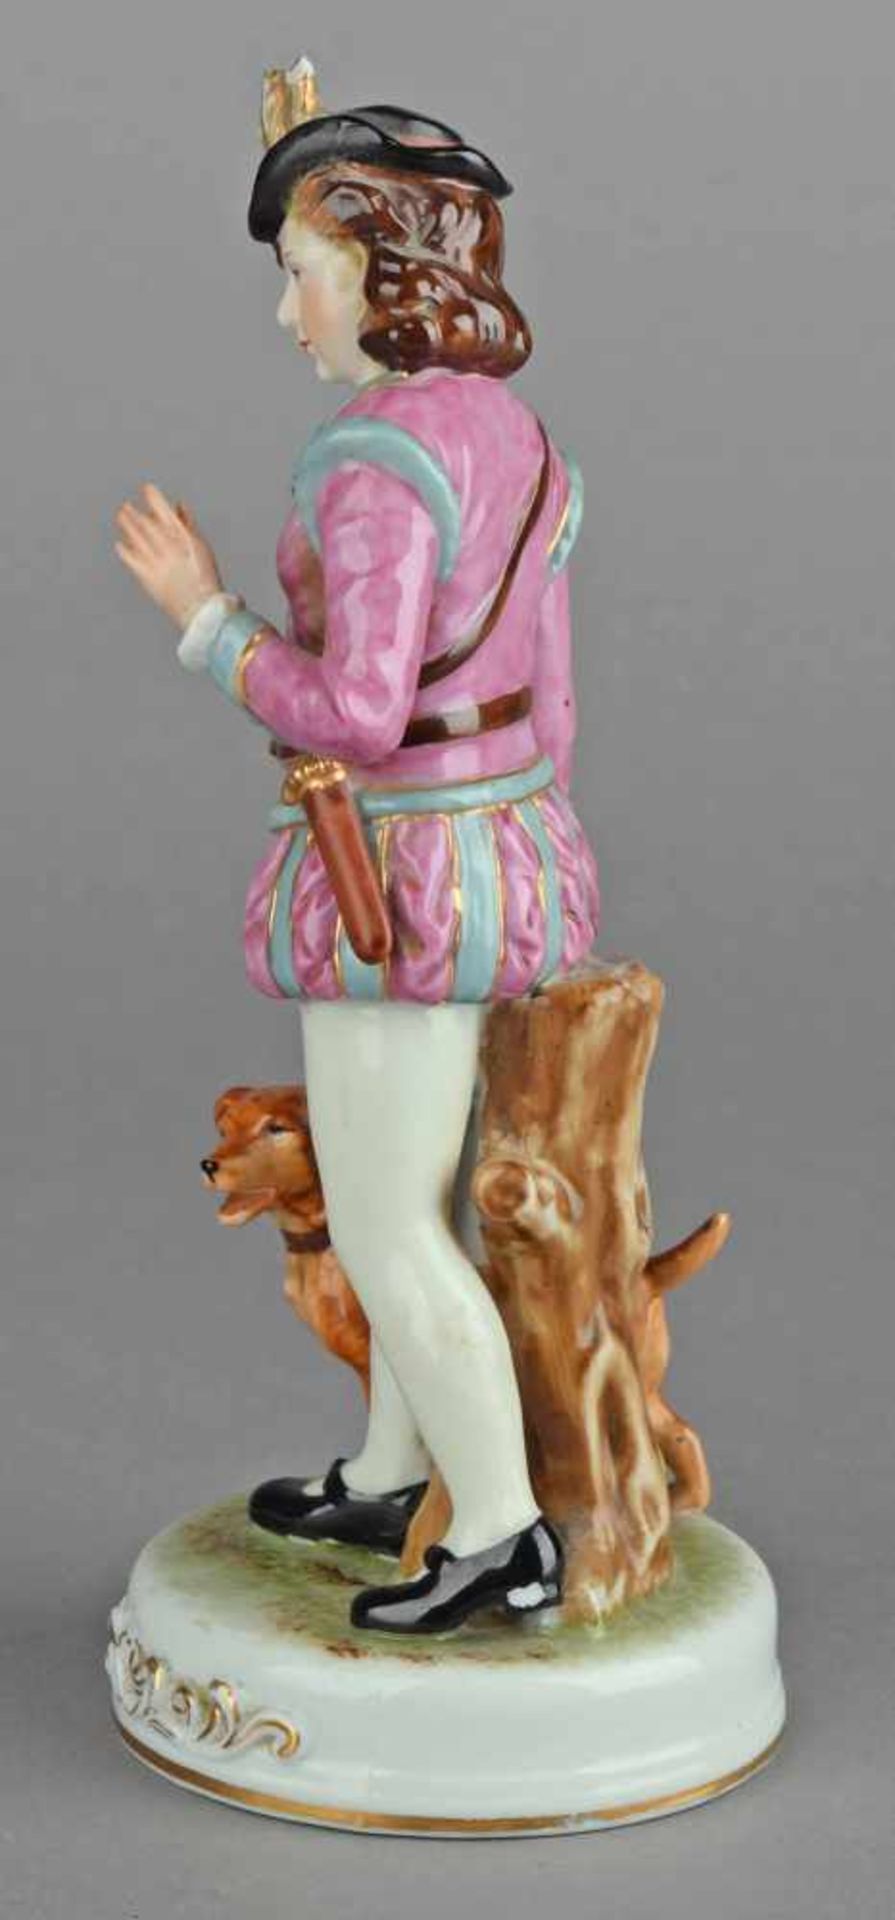 Jäger-Figurine Bodenmarke in Rot "Marurjama Made in Occupied Japan", Dame im stilisierten - Bild 3 aus 4